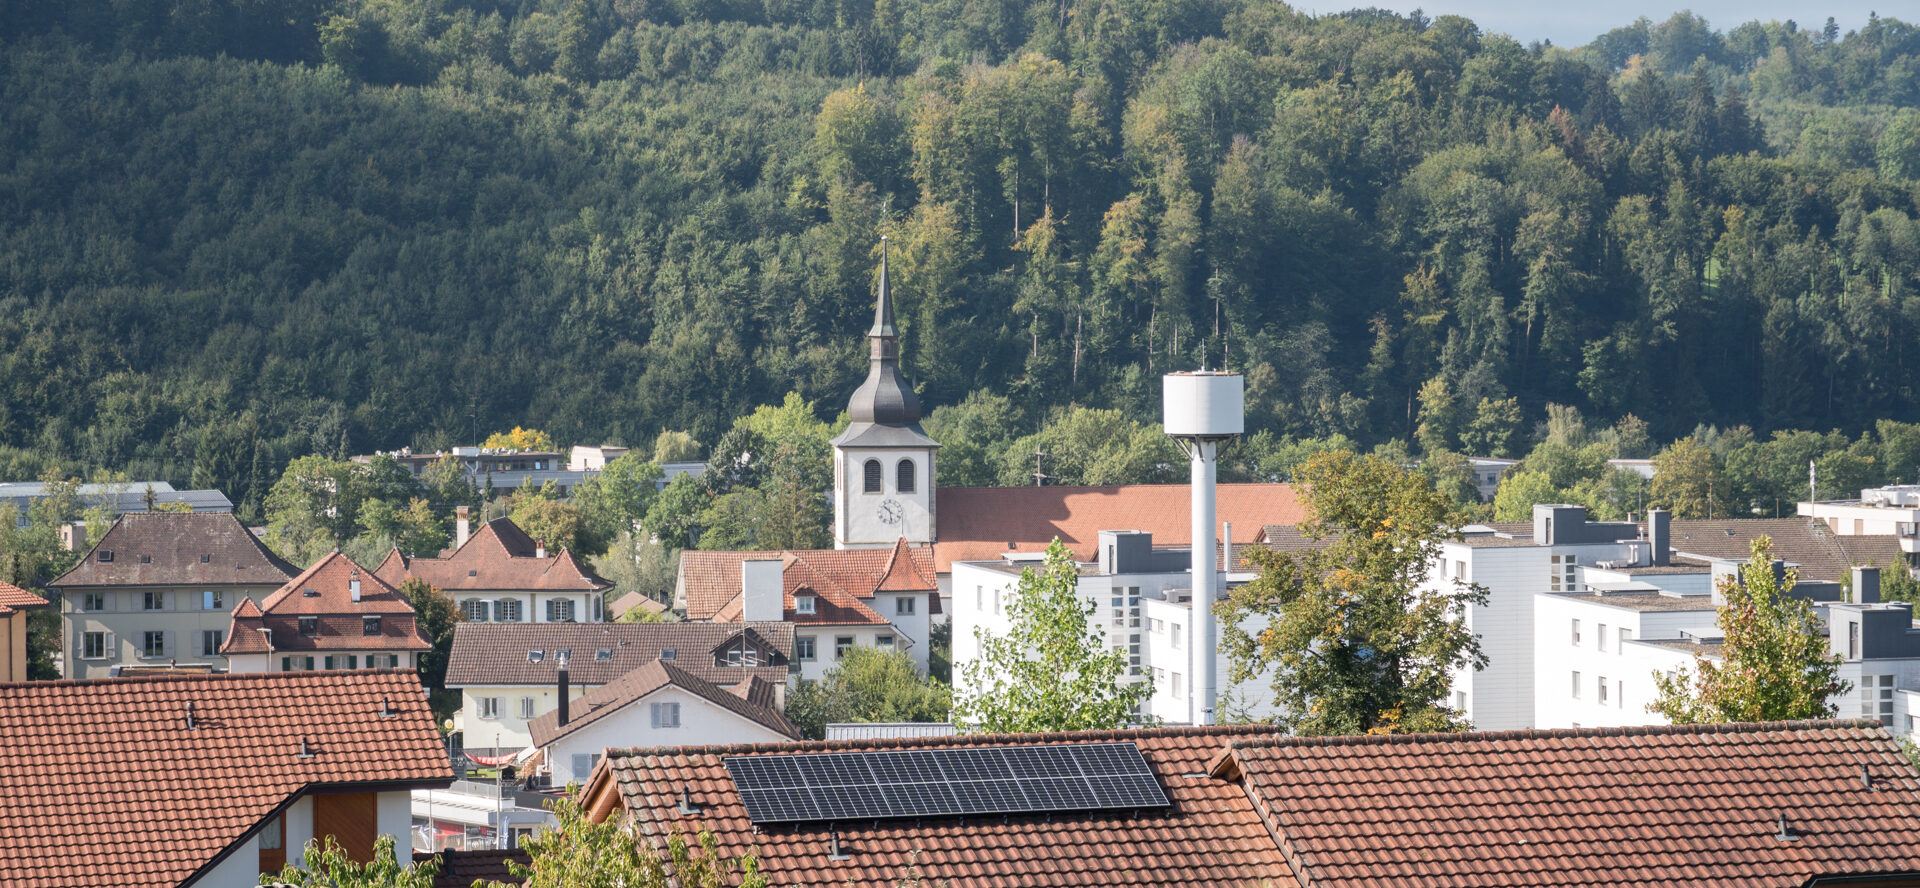 Le village de Marly (FR) abritait la dernière maison des Pères du Saint-Sacrement en Suisse | © Maurice Page